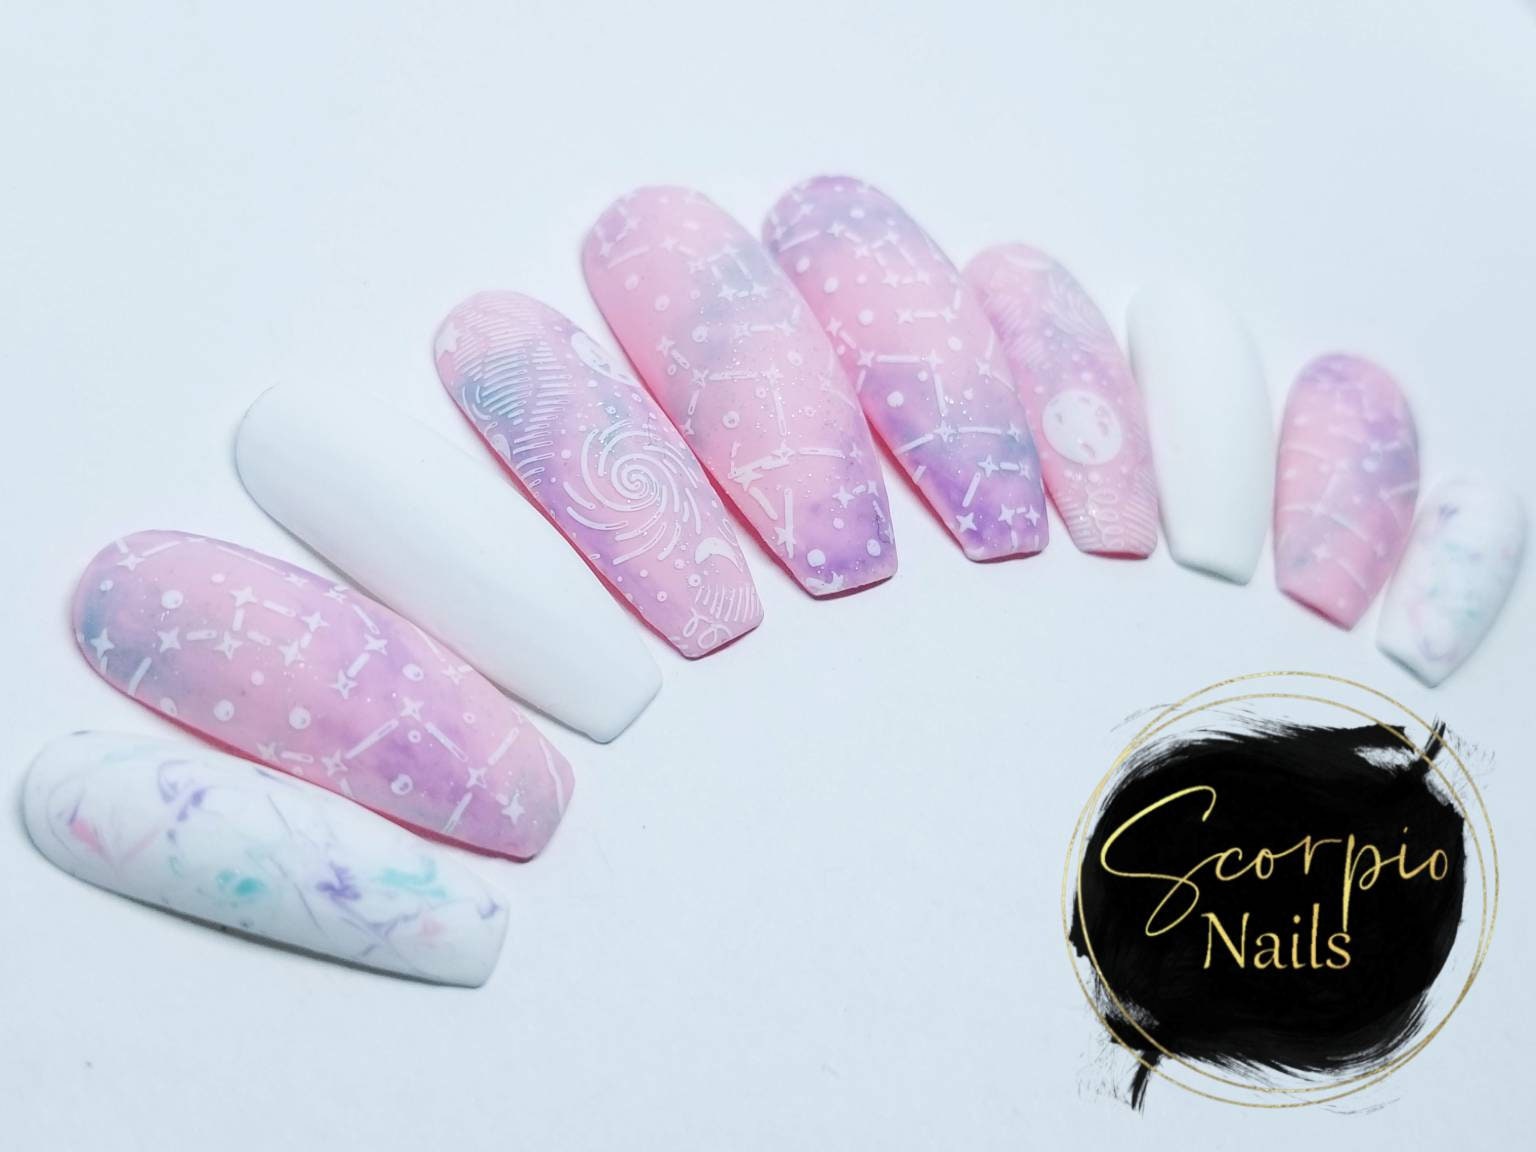 Pastel galaxy nails press on nails fake nails purple pink | Etsy